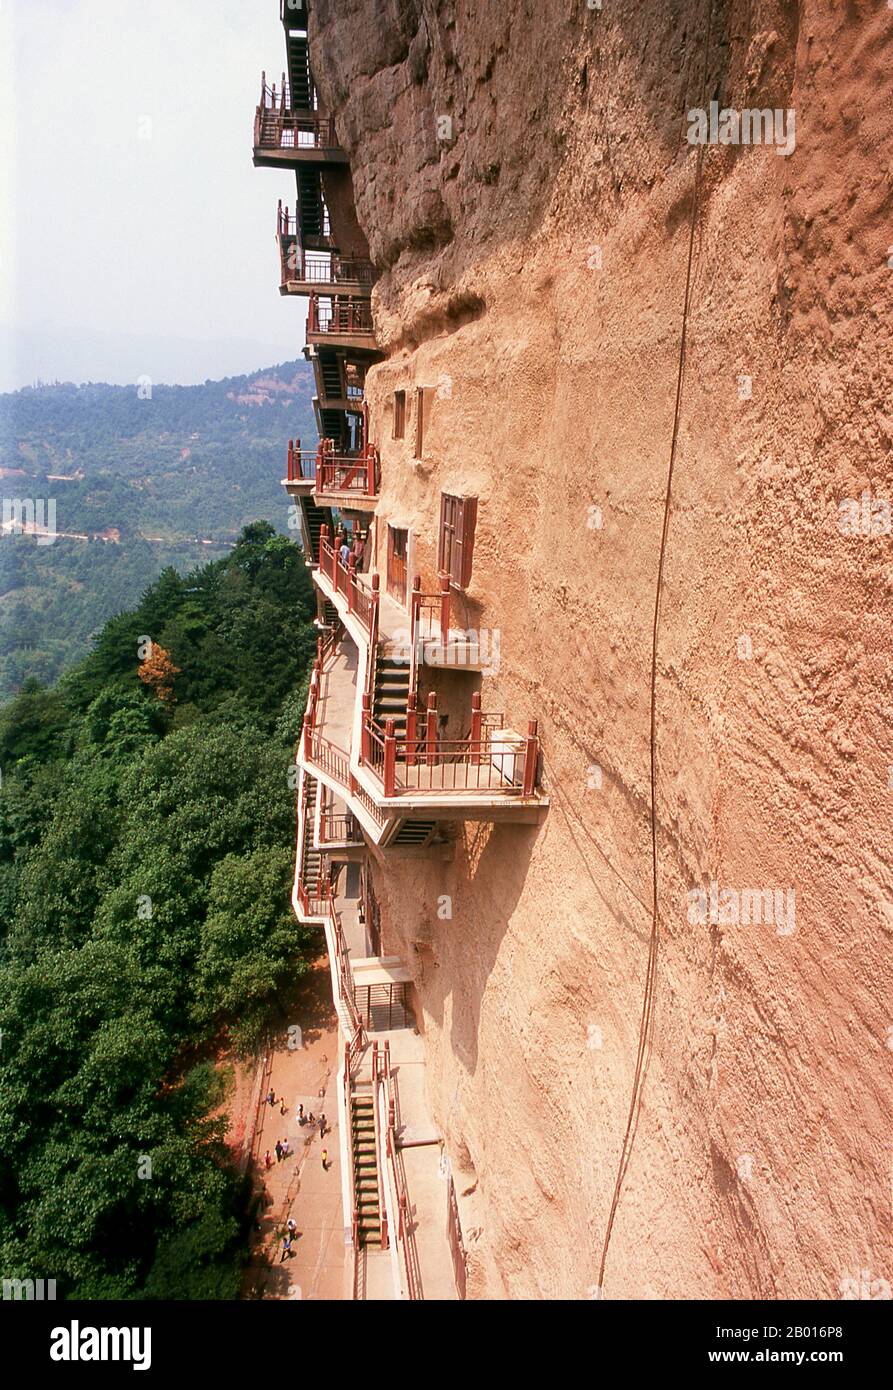 Chine : escaliers précipitamment dans les grottes de Maiji Shan, Tianshui, province de Gansu.Maijishan Shiku (grottes de Maiji Shan) est l’un des quatre groupes de temples bouddhistes les plus importants de Chine (les autres étant Datong, Luoyang et les grottes de Mogao à Dunhuang).À partir des dynasties de Wei du Nord (386-535) et de Zhou du Nord (557-81), les bouddhistes tachent des grottes sur les côtés d'un affleurement rouge qui s'élève des collines couvertes de feuillage environnantes.Les figures du Bouddha, des bodhisattvas et des disciples ont été sculptées dans le rocher plus dur apporté d'ailleurs, et installées dans les grottes. Banque D'Images